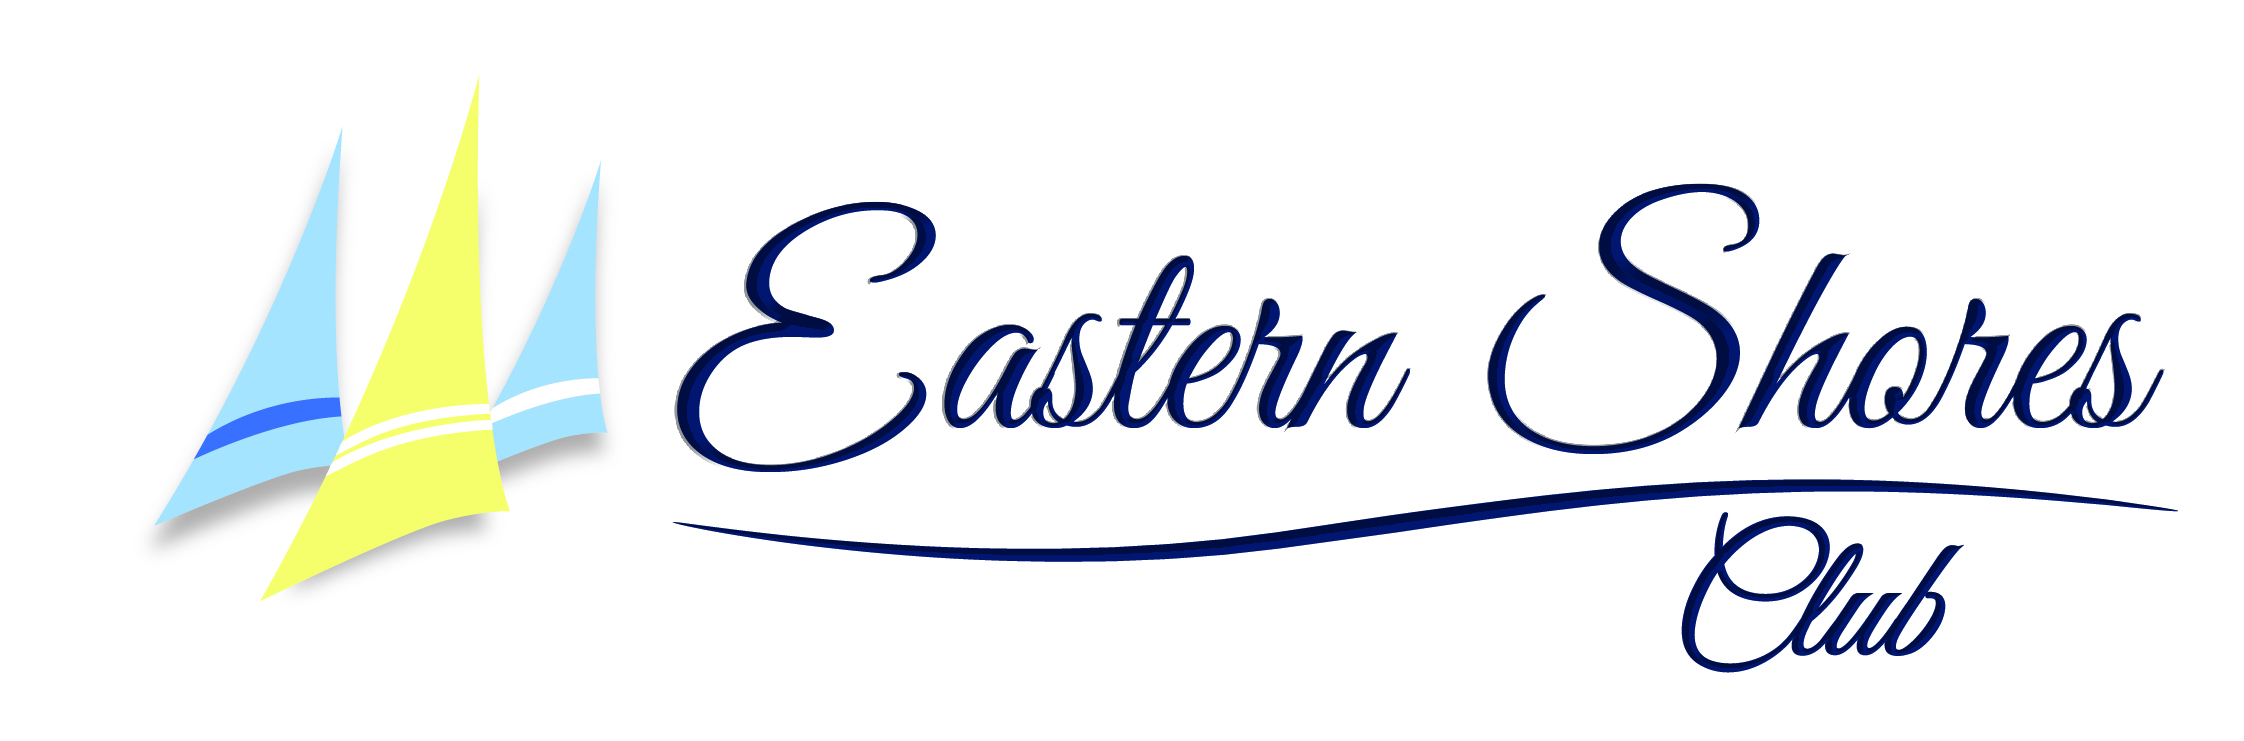 Eastern Shores Club